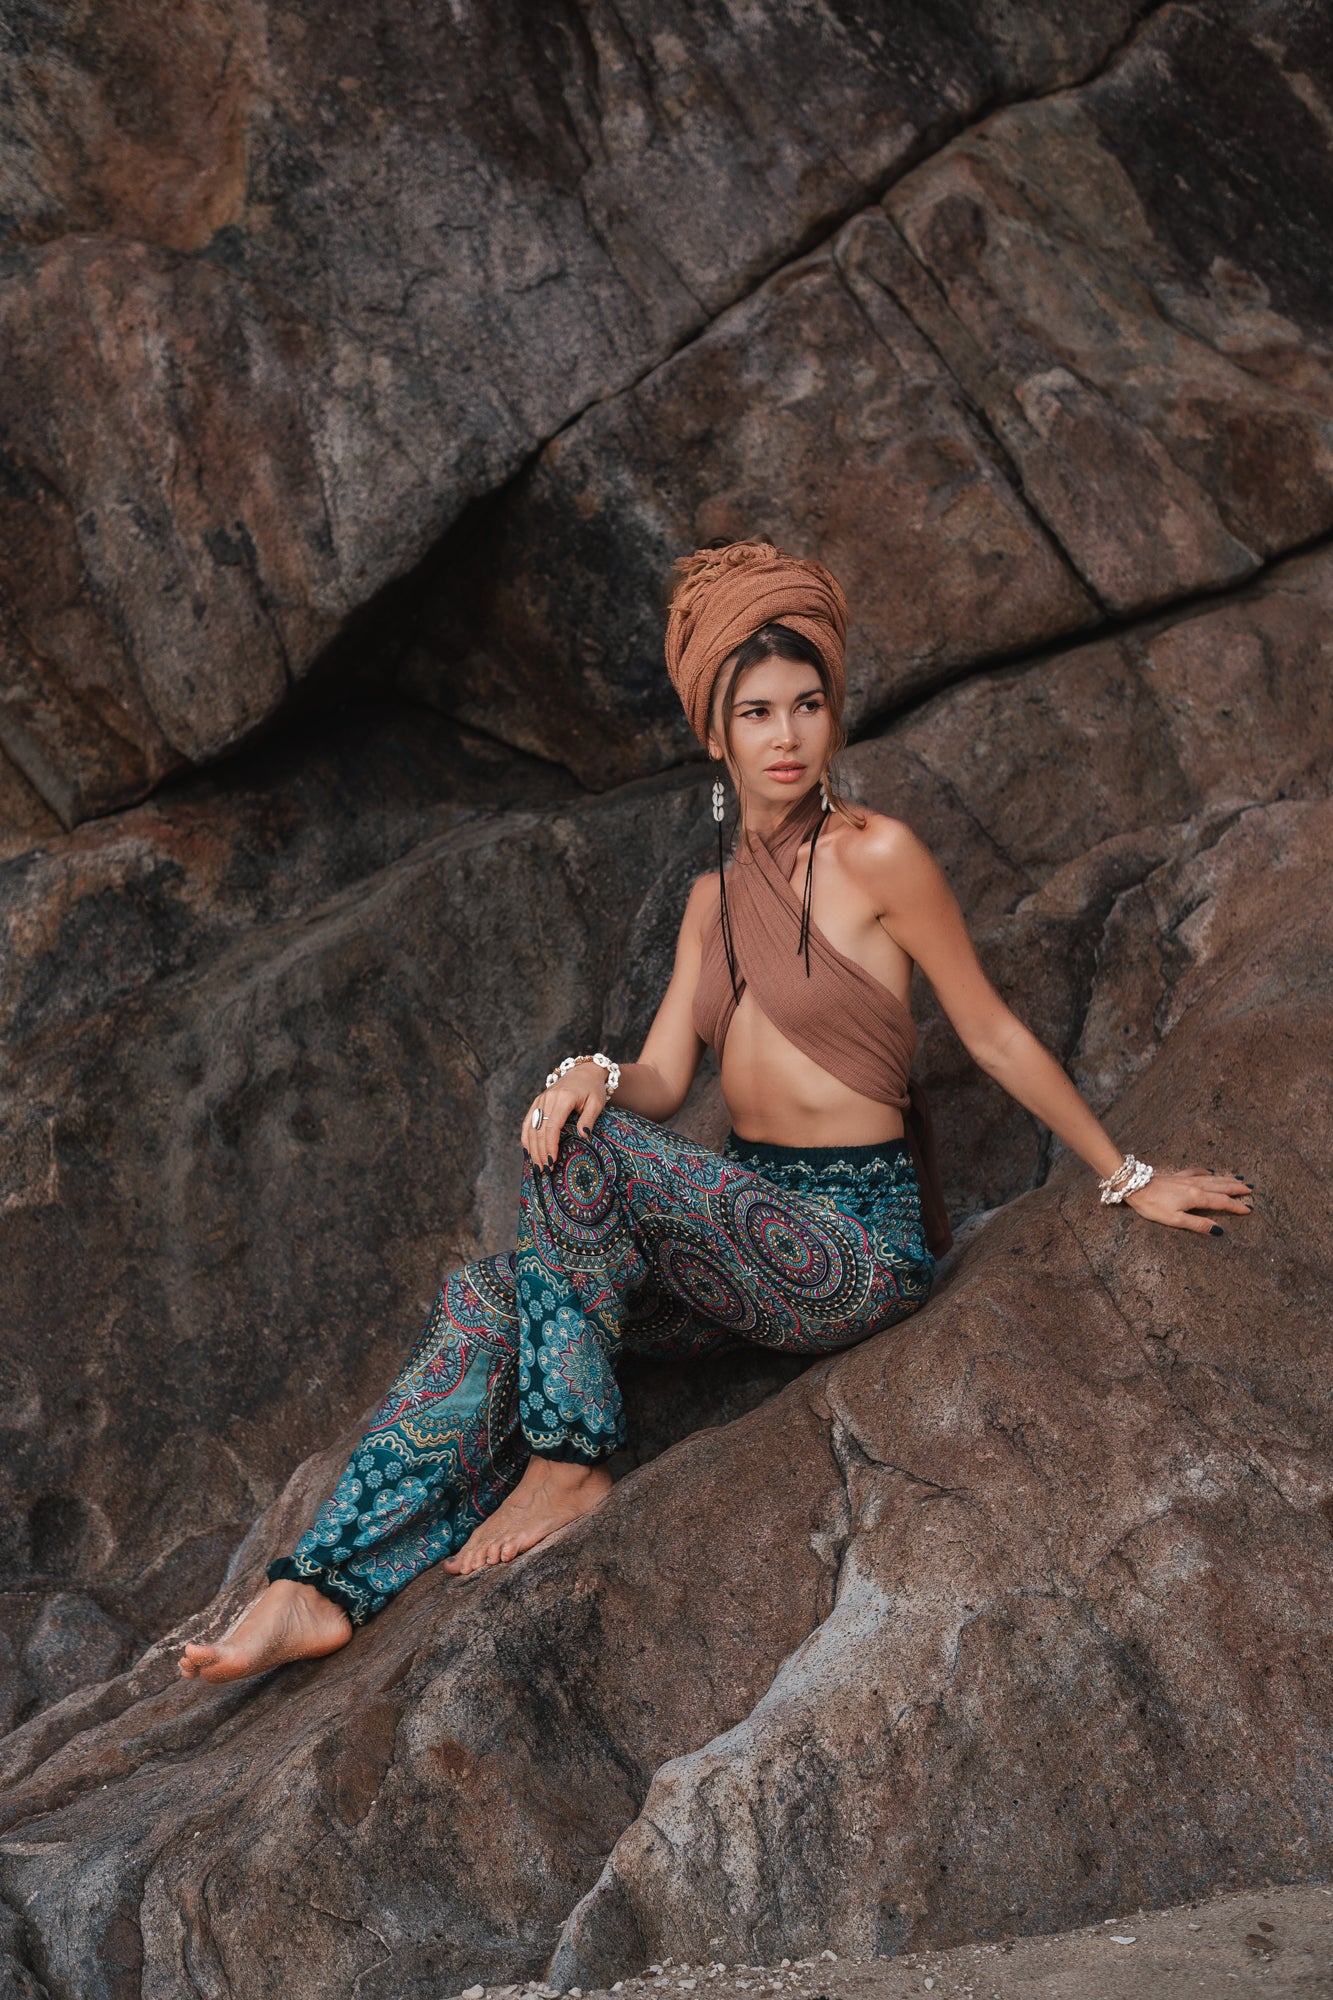 High Crotch Harem Pants - New Mandala Print - Sea Green